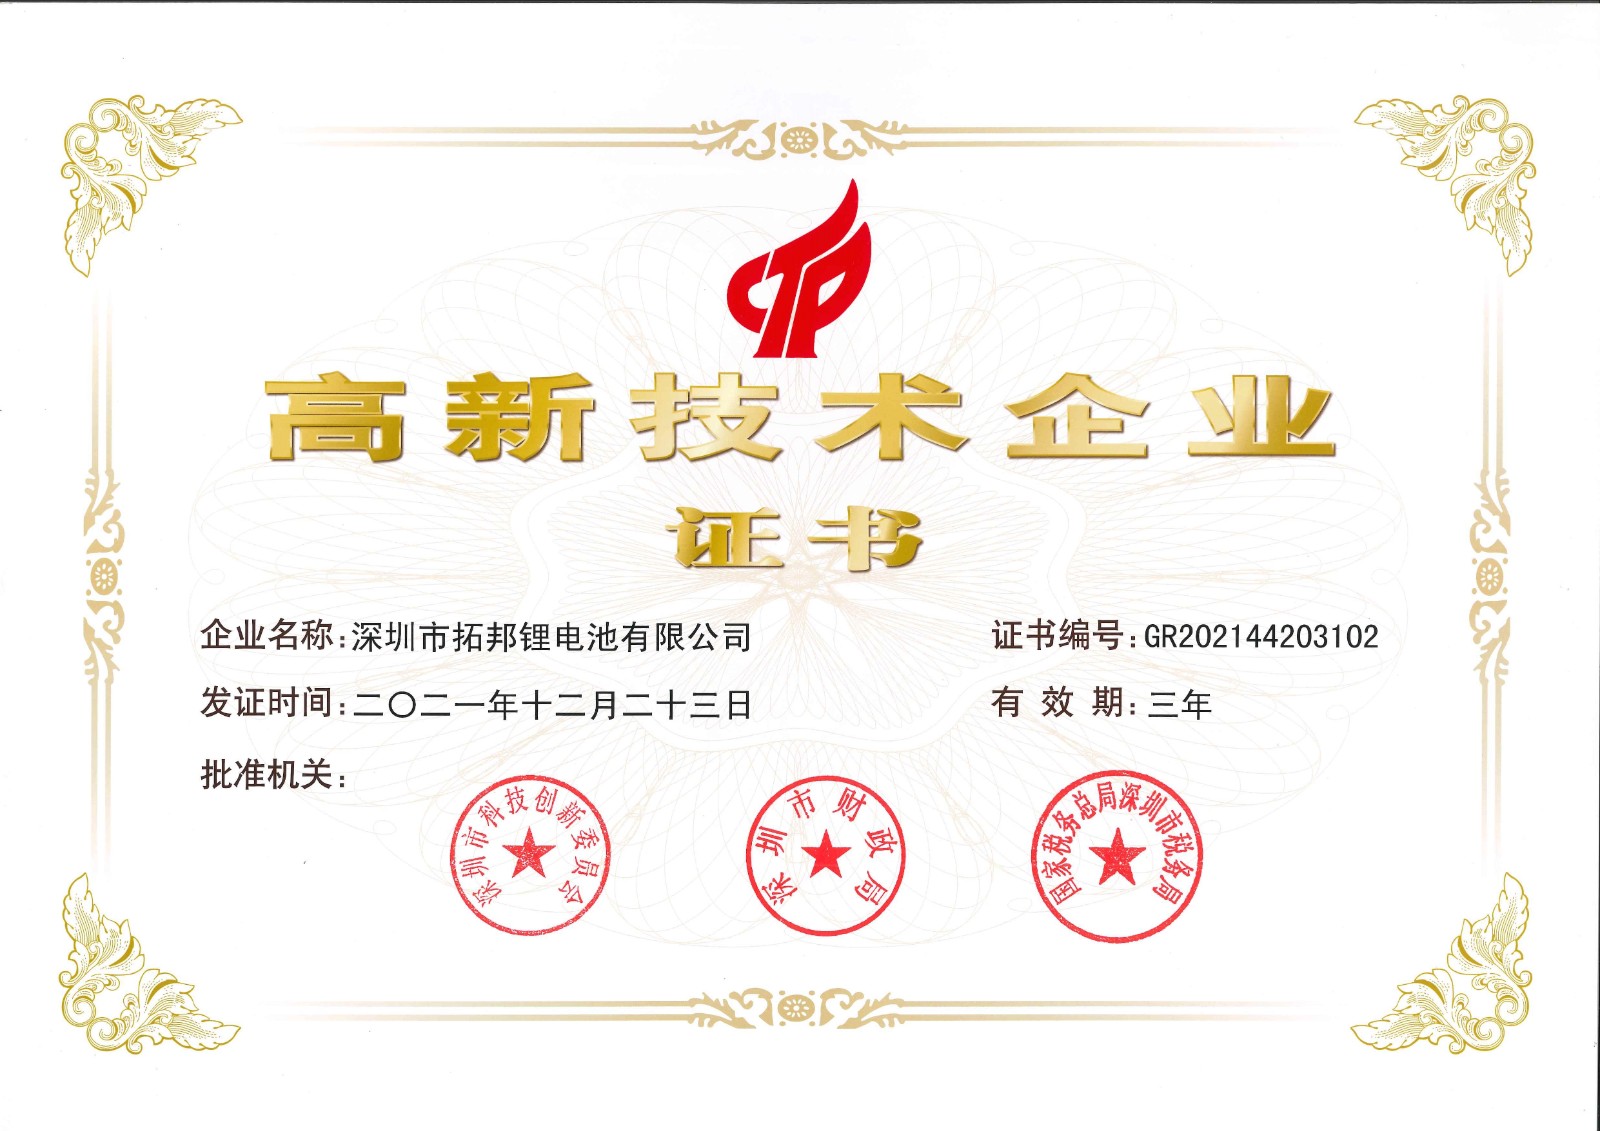 深圳市拓邦锂电池有限公司--国高证书GR202144203102.jpg